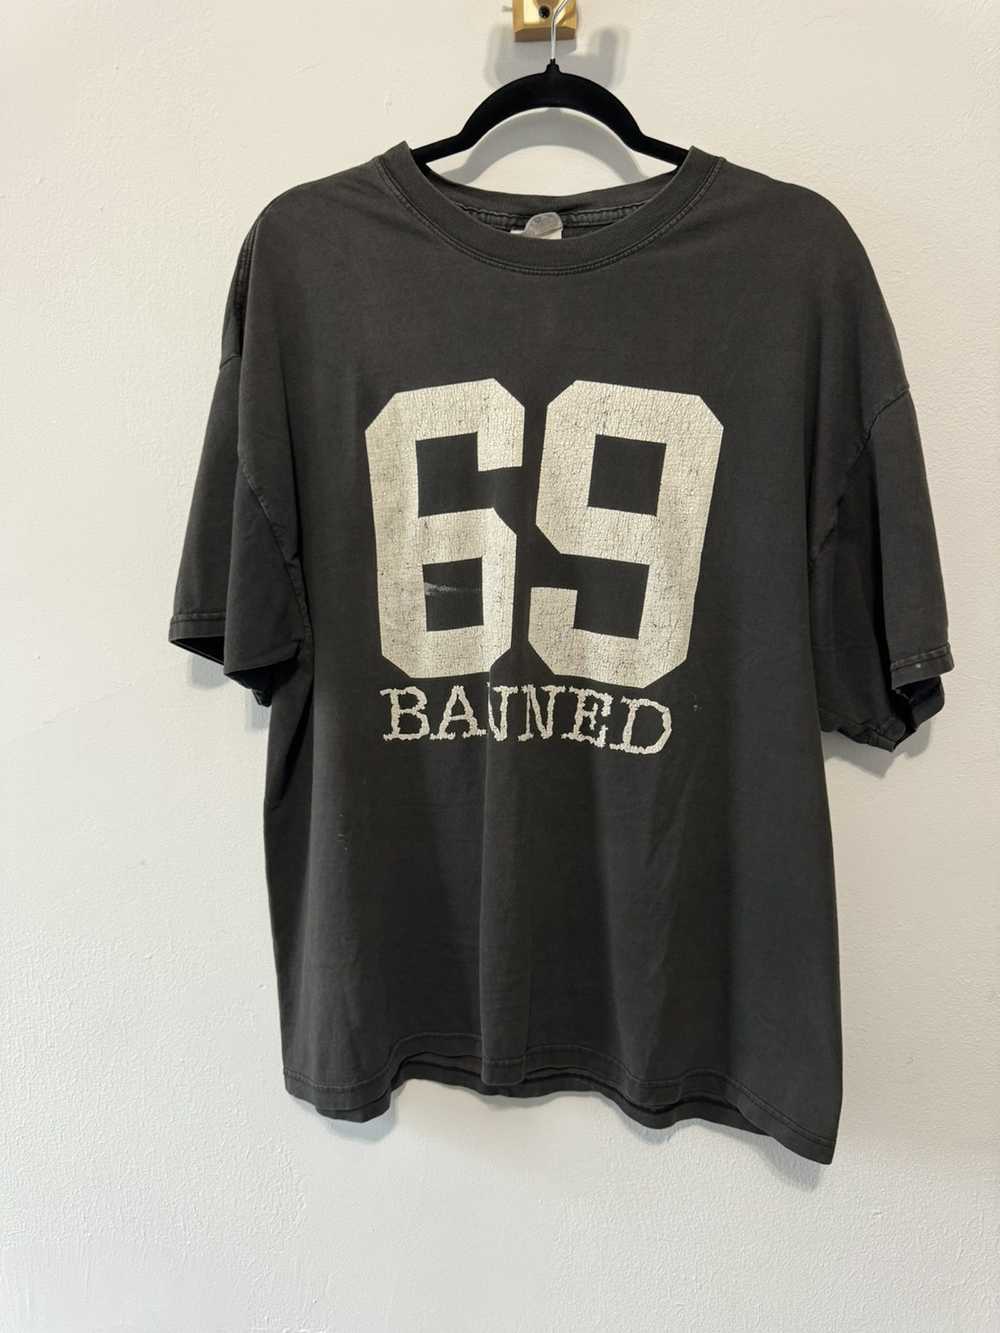 Vintage Banned 69 vintage shirt - image 1